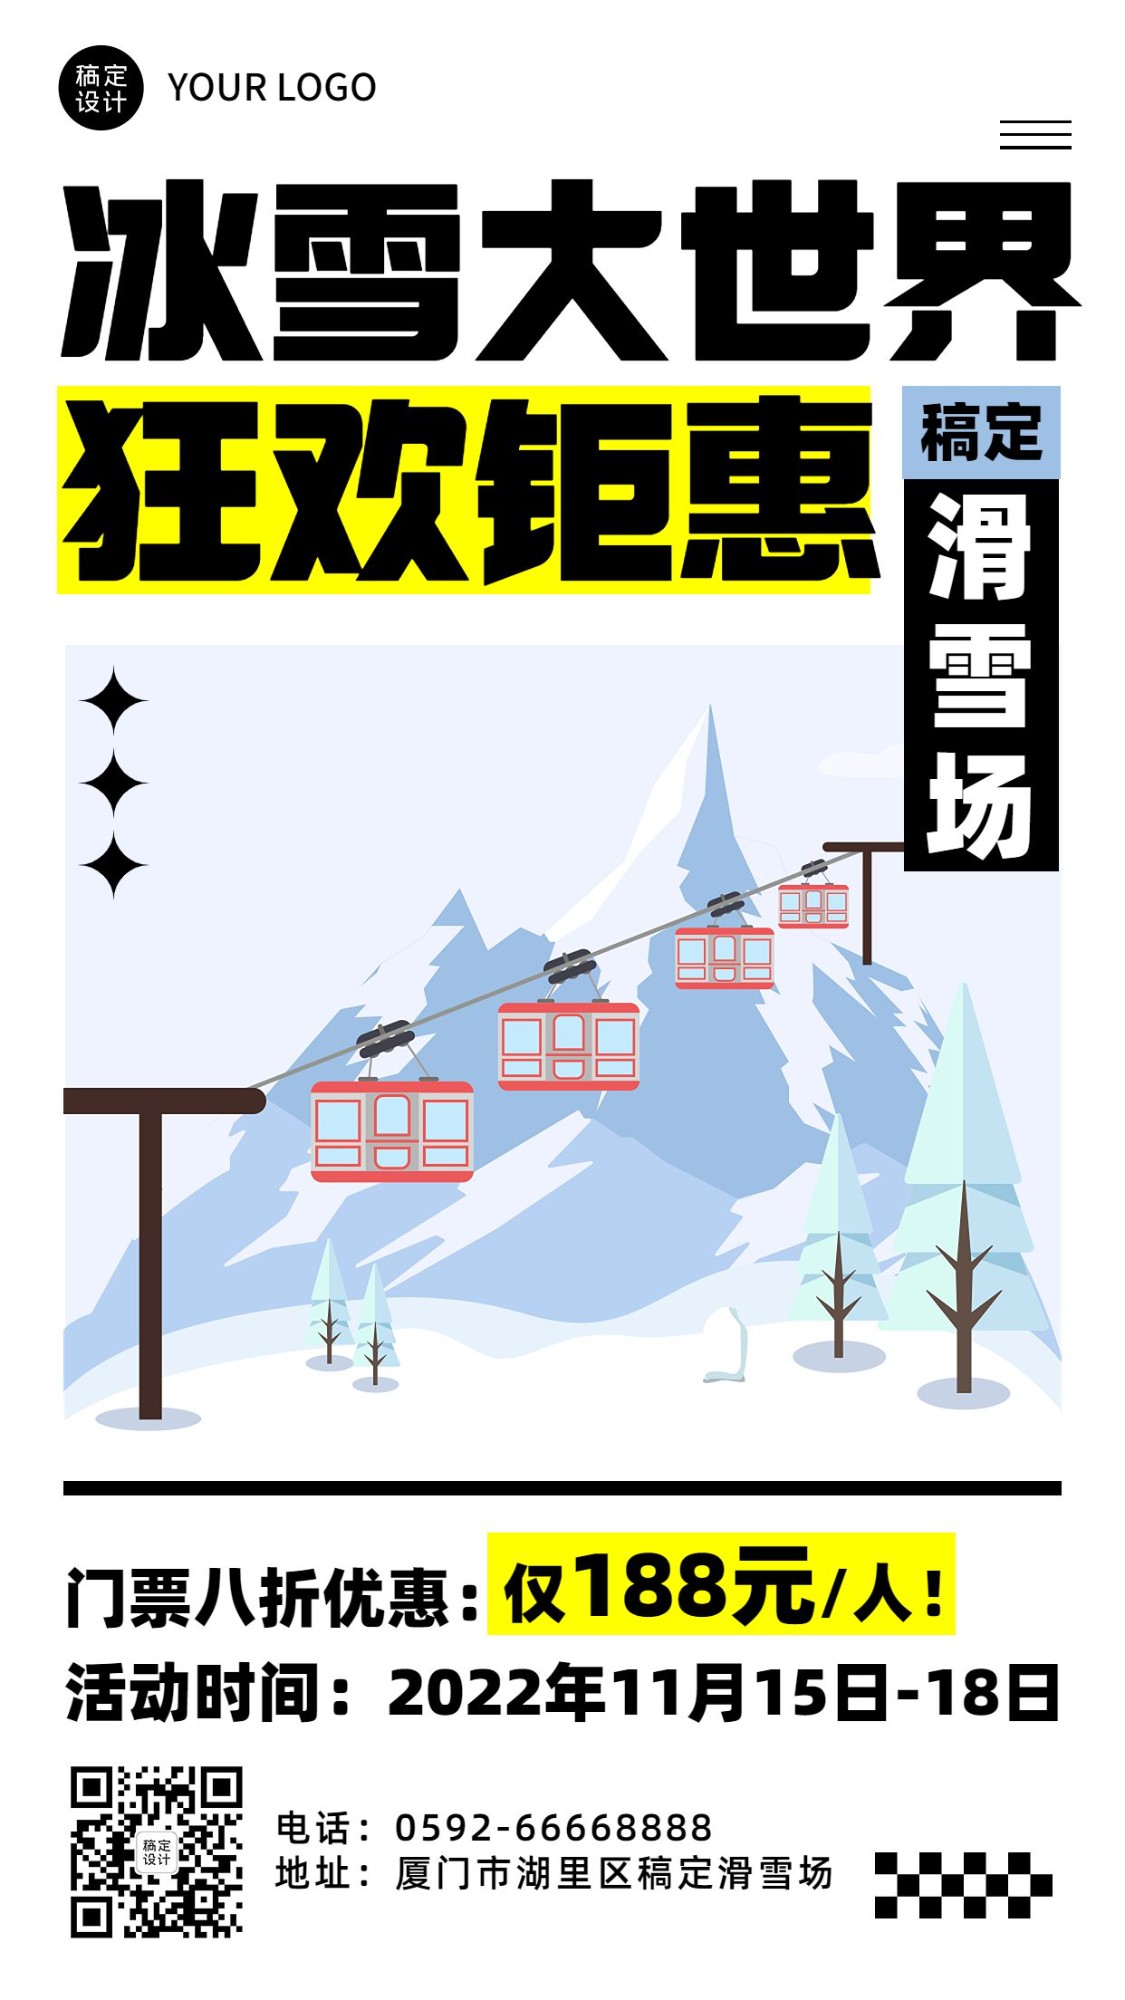 滑雪溜冰活动宣传手机海报